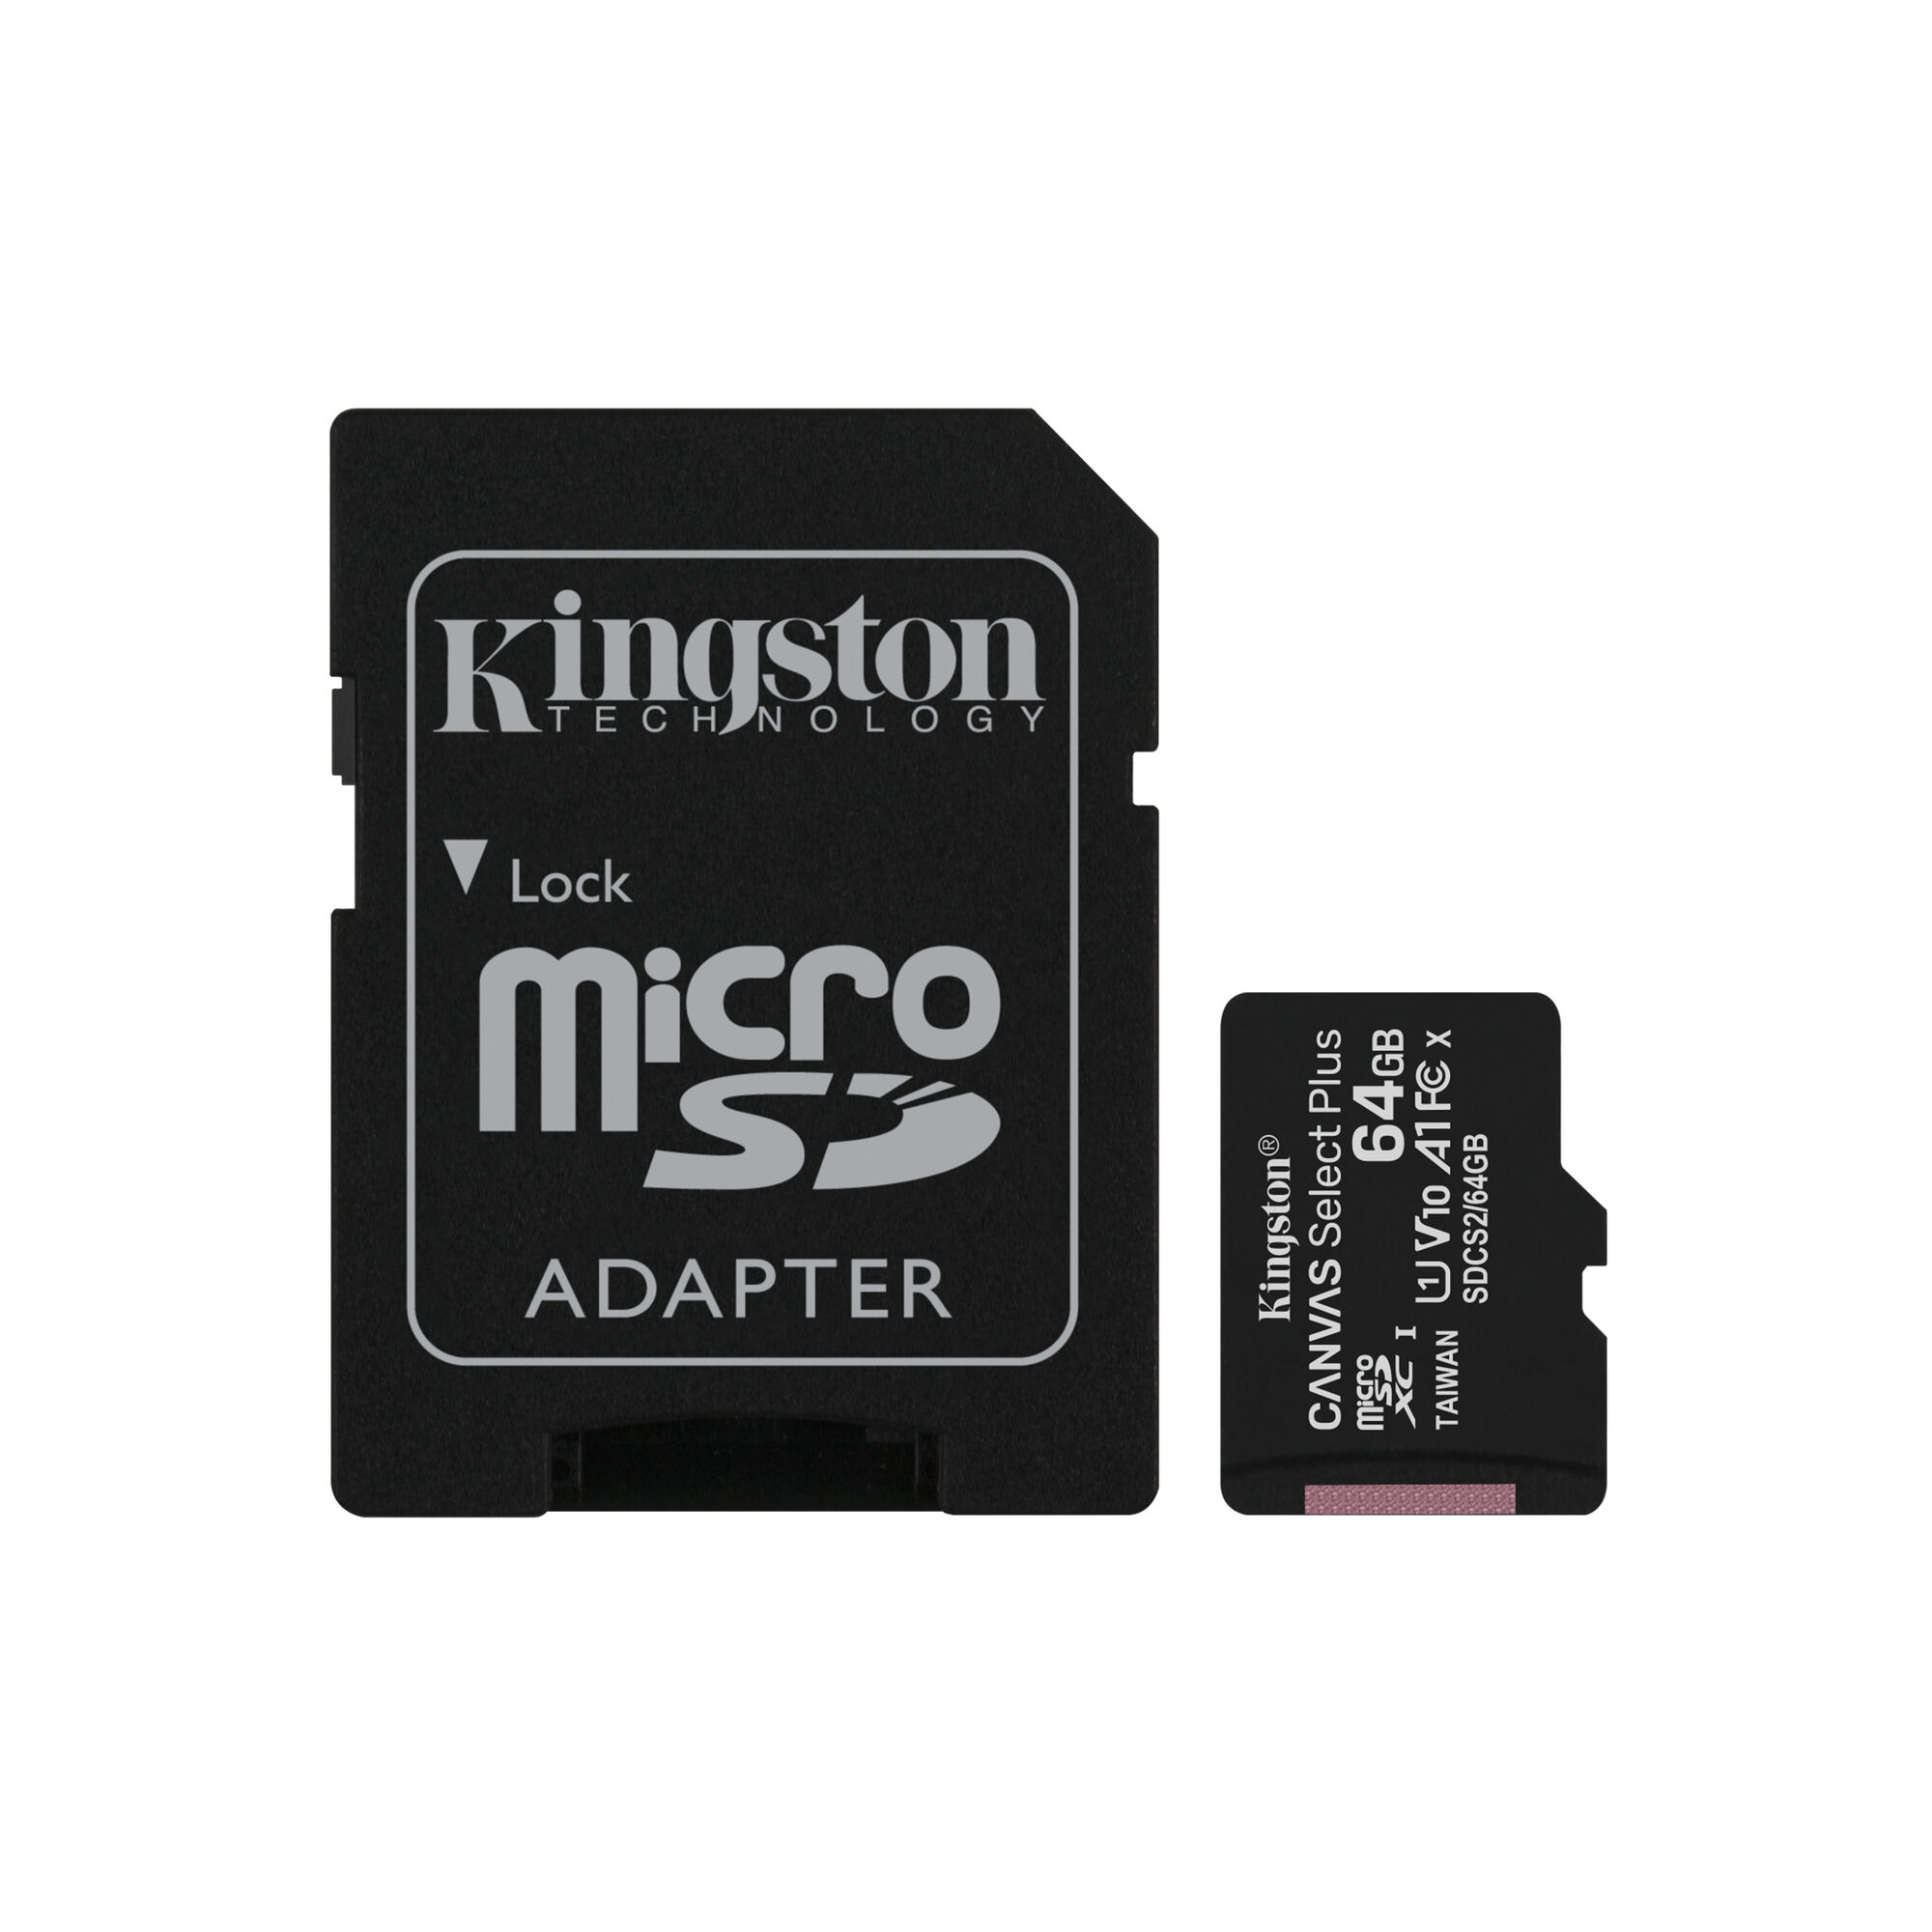 Kingston Technology Carte micSDXC Canvas Select Plus 100R A1 C10 de 64 Go + ADP - Neuf